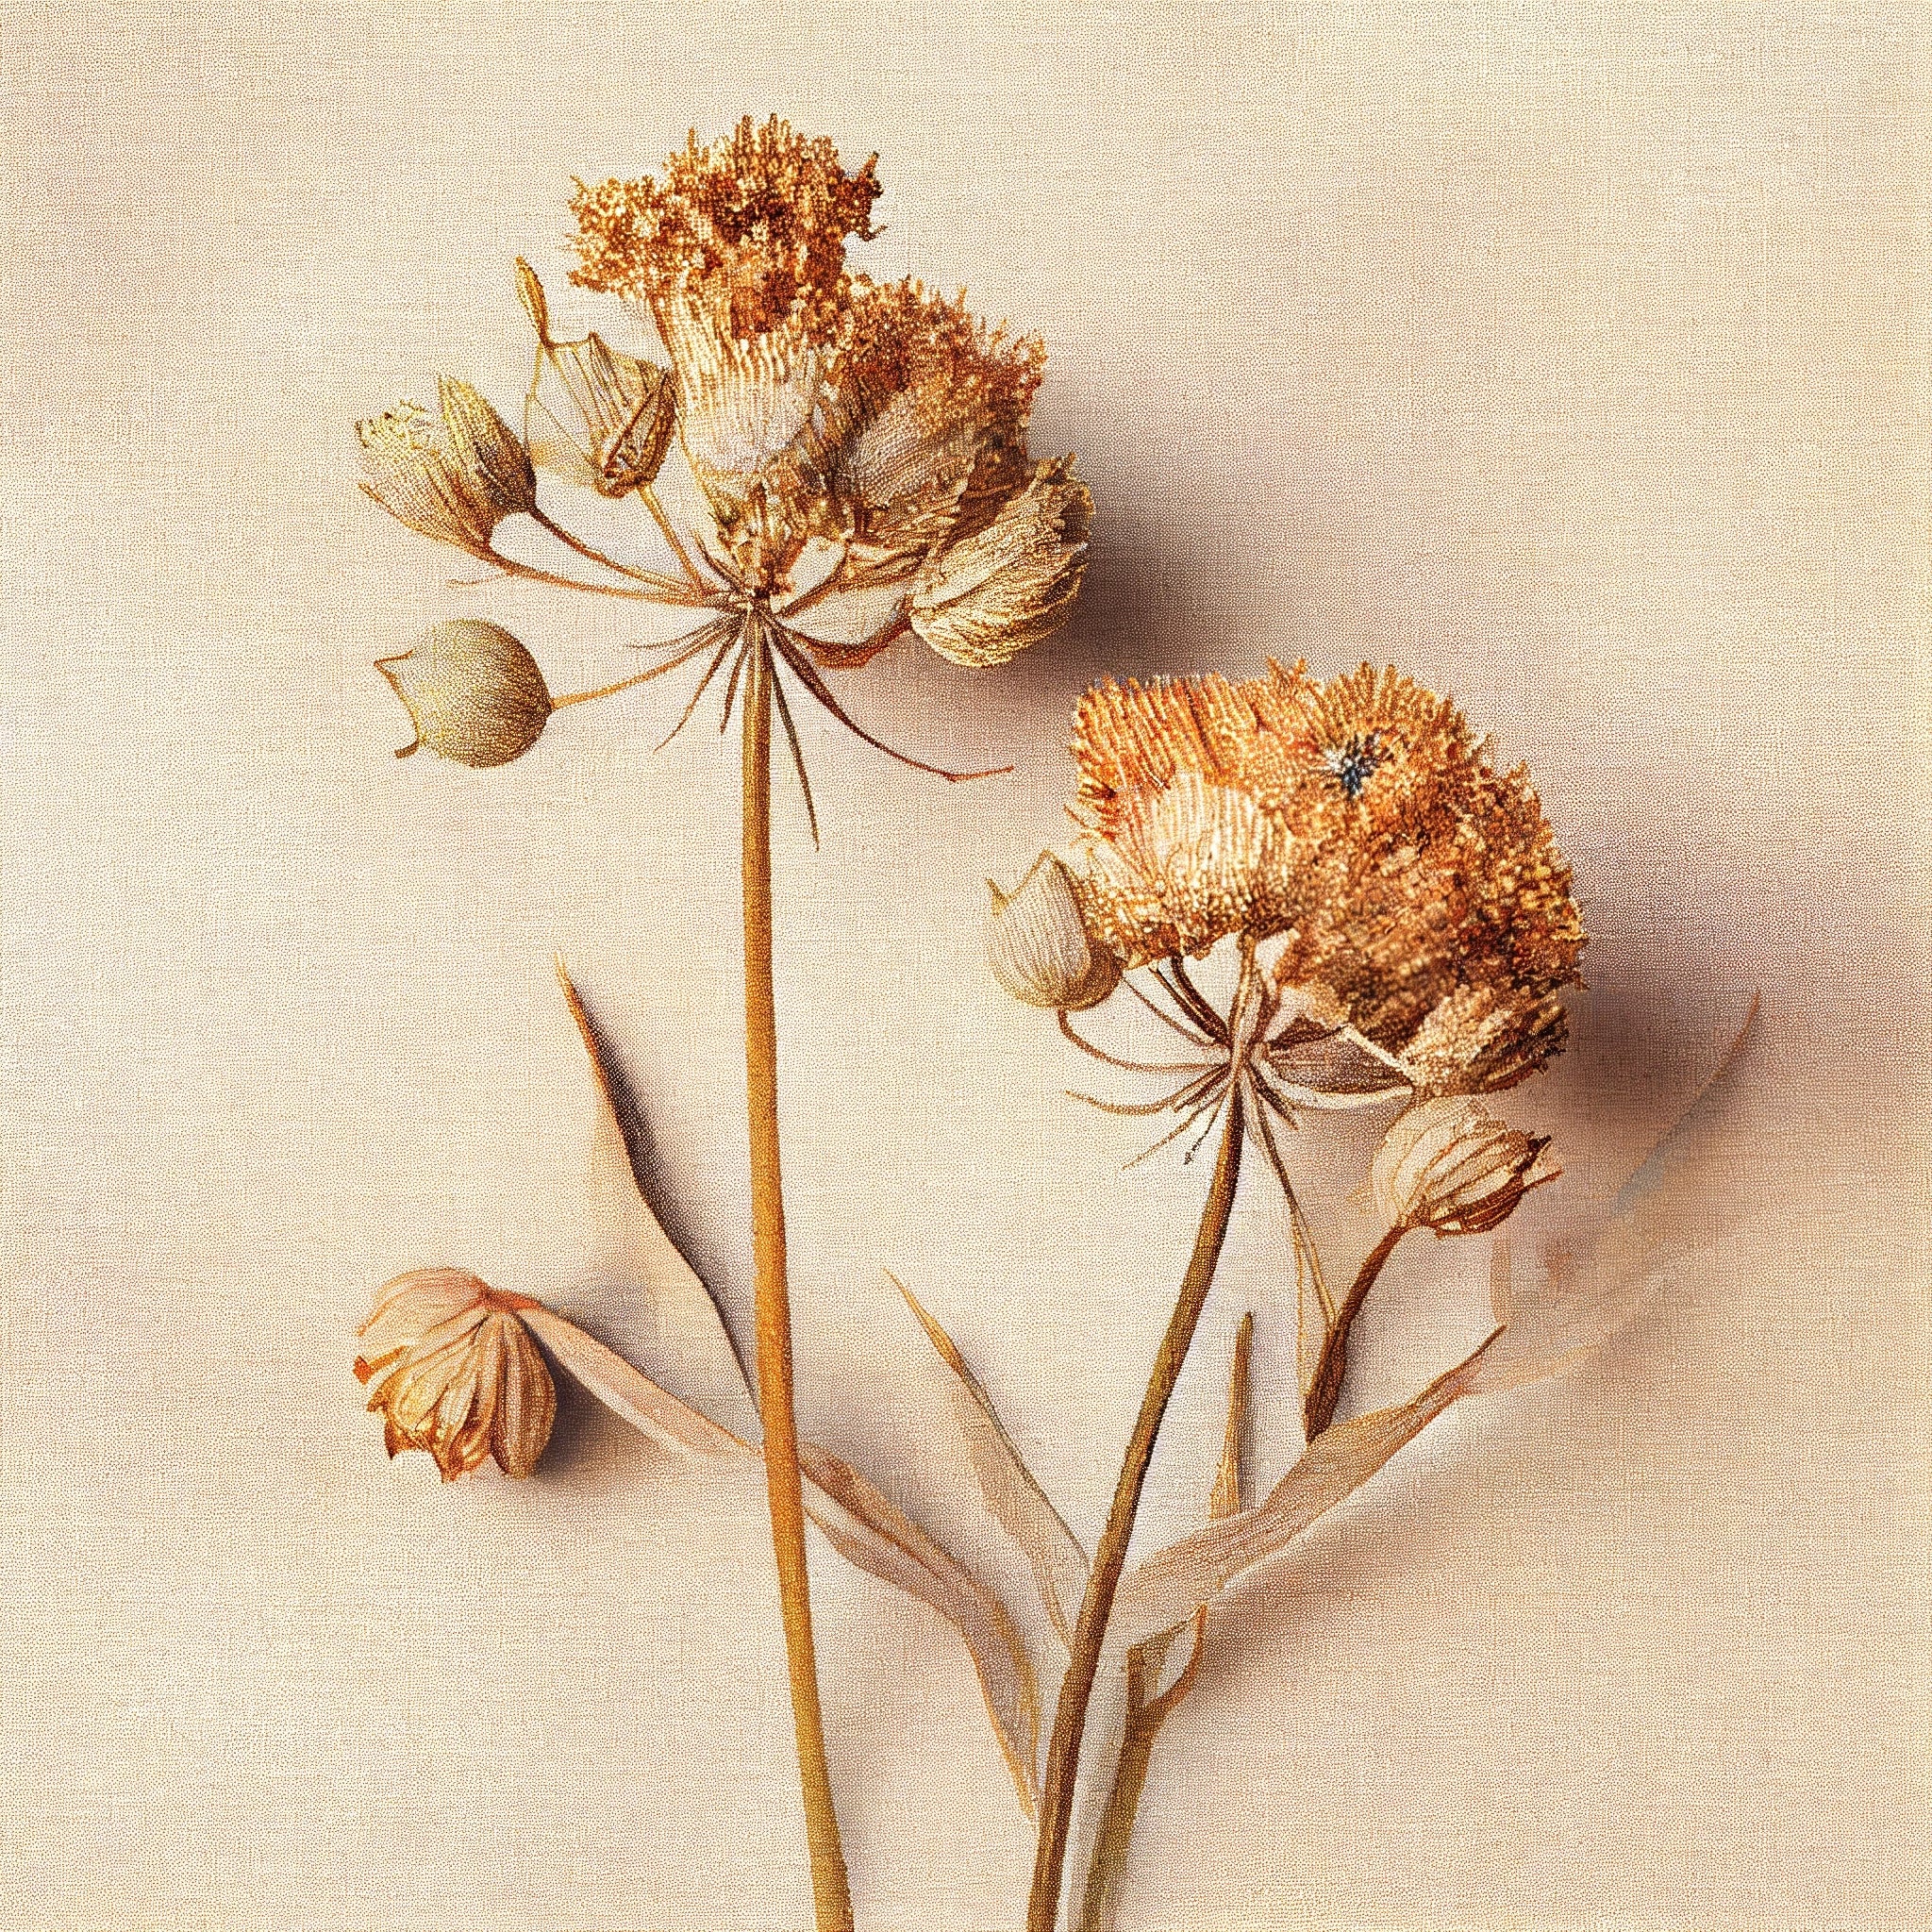 Subtle Beauty: Dried Allium Flowers in Light Beige on Linen